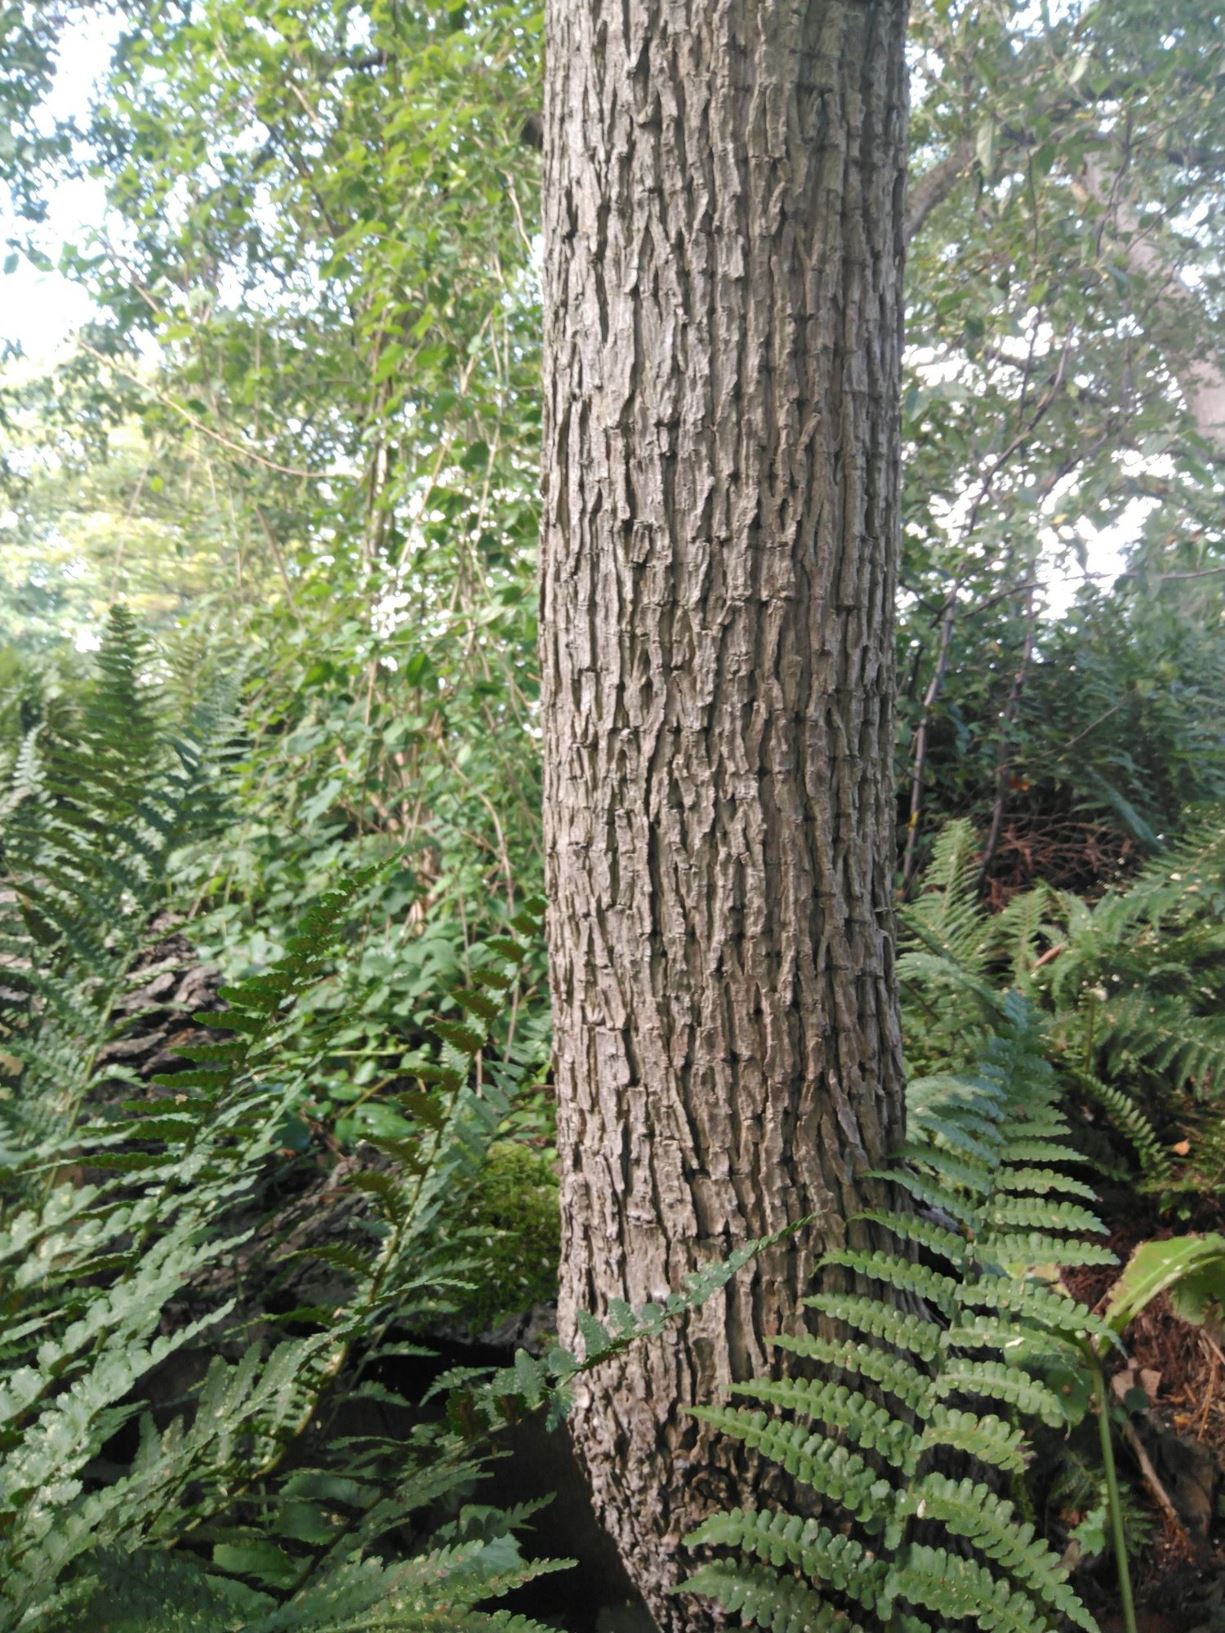 Ehretia acuminata - Kodo wood